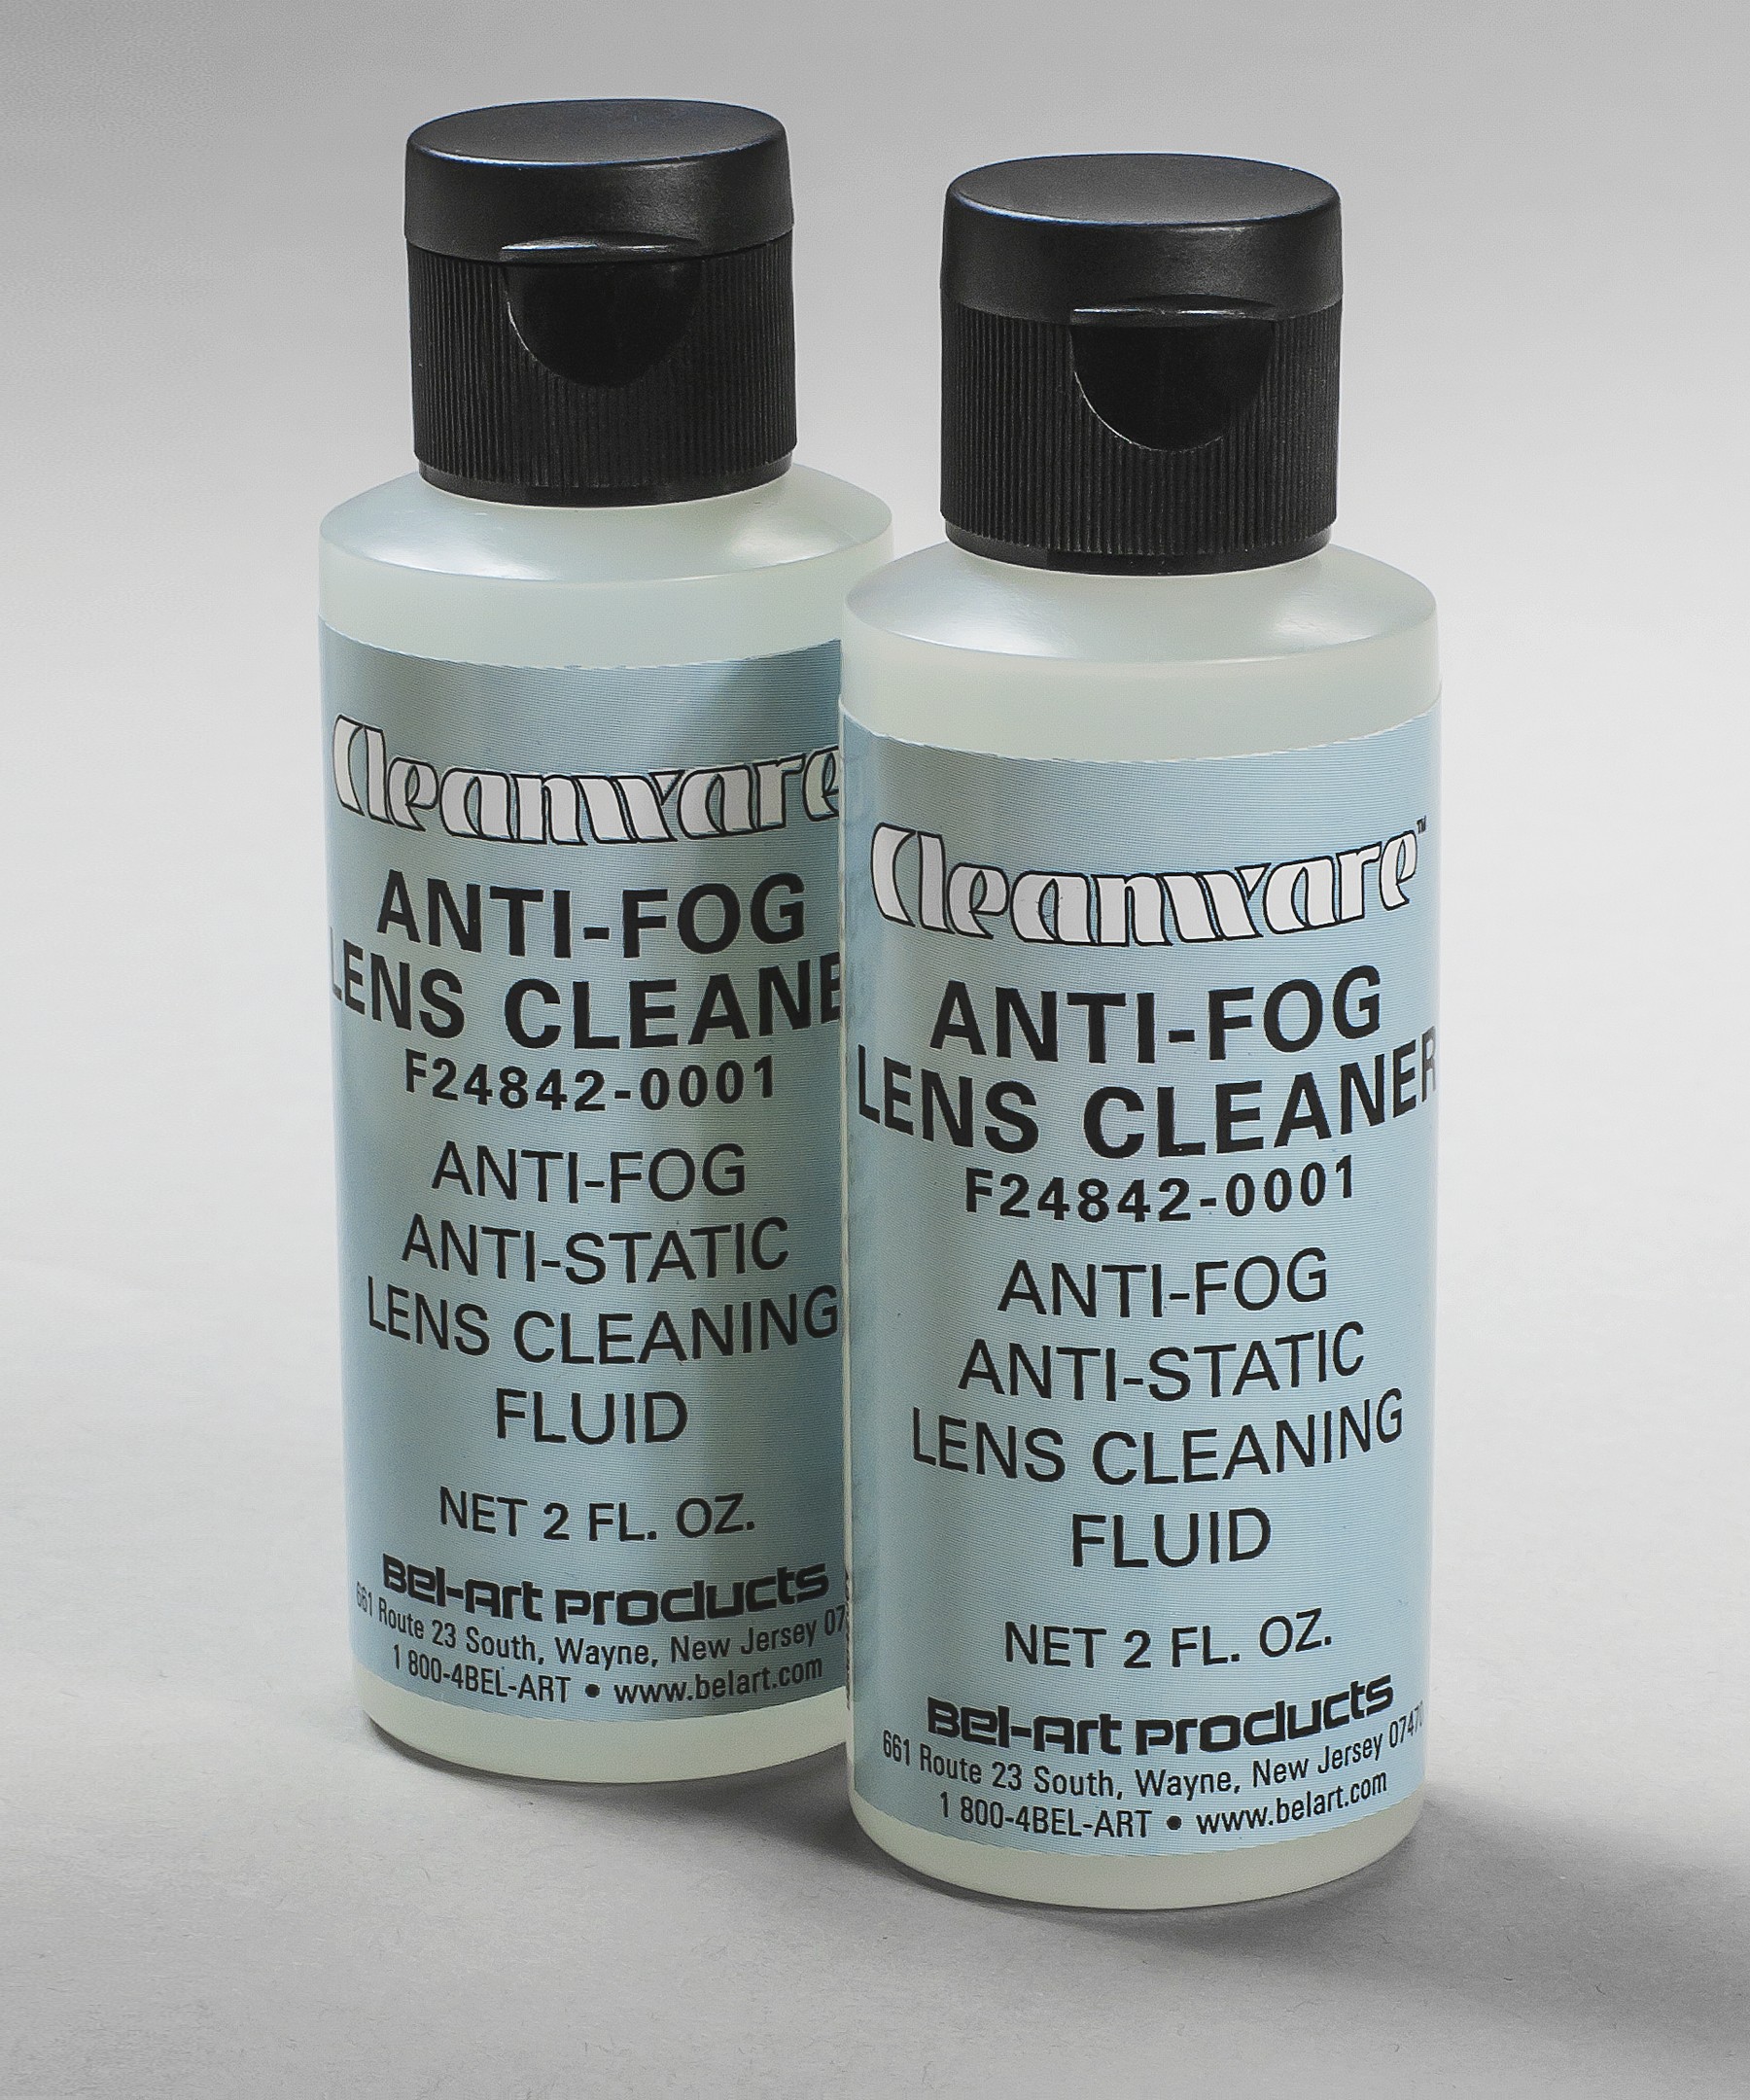 Cleanware Anti-Fog Lens Cleaner